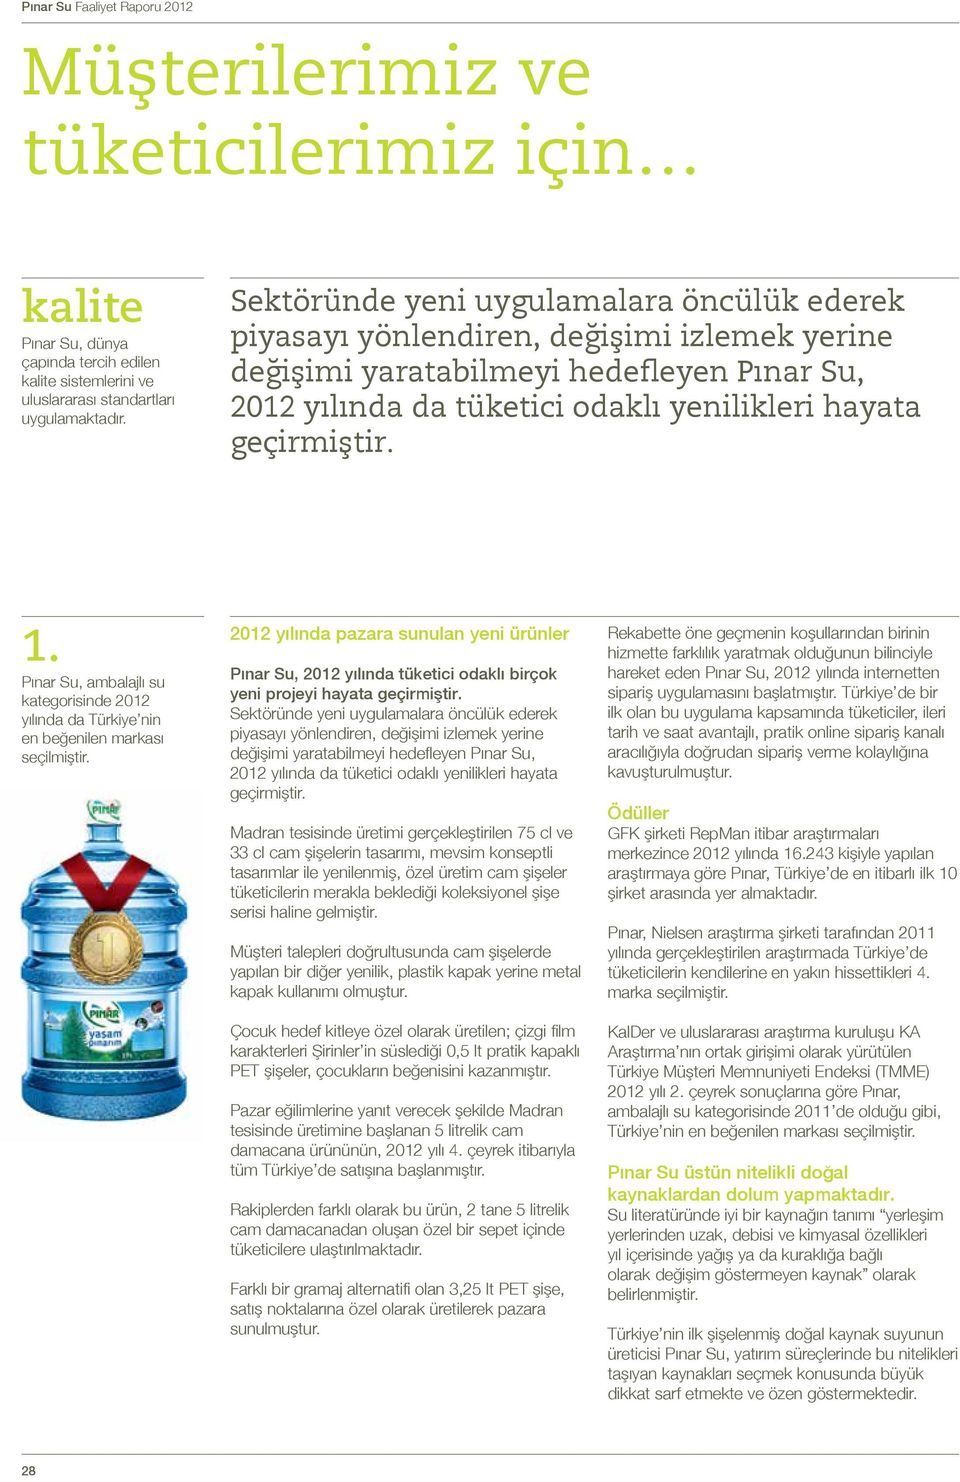 Pınar Su, ambalajlı su kategorisinde 2012 yılında da Türkiye nin en beğenilen markası seçilmiştir.